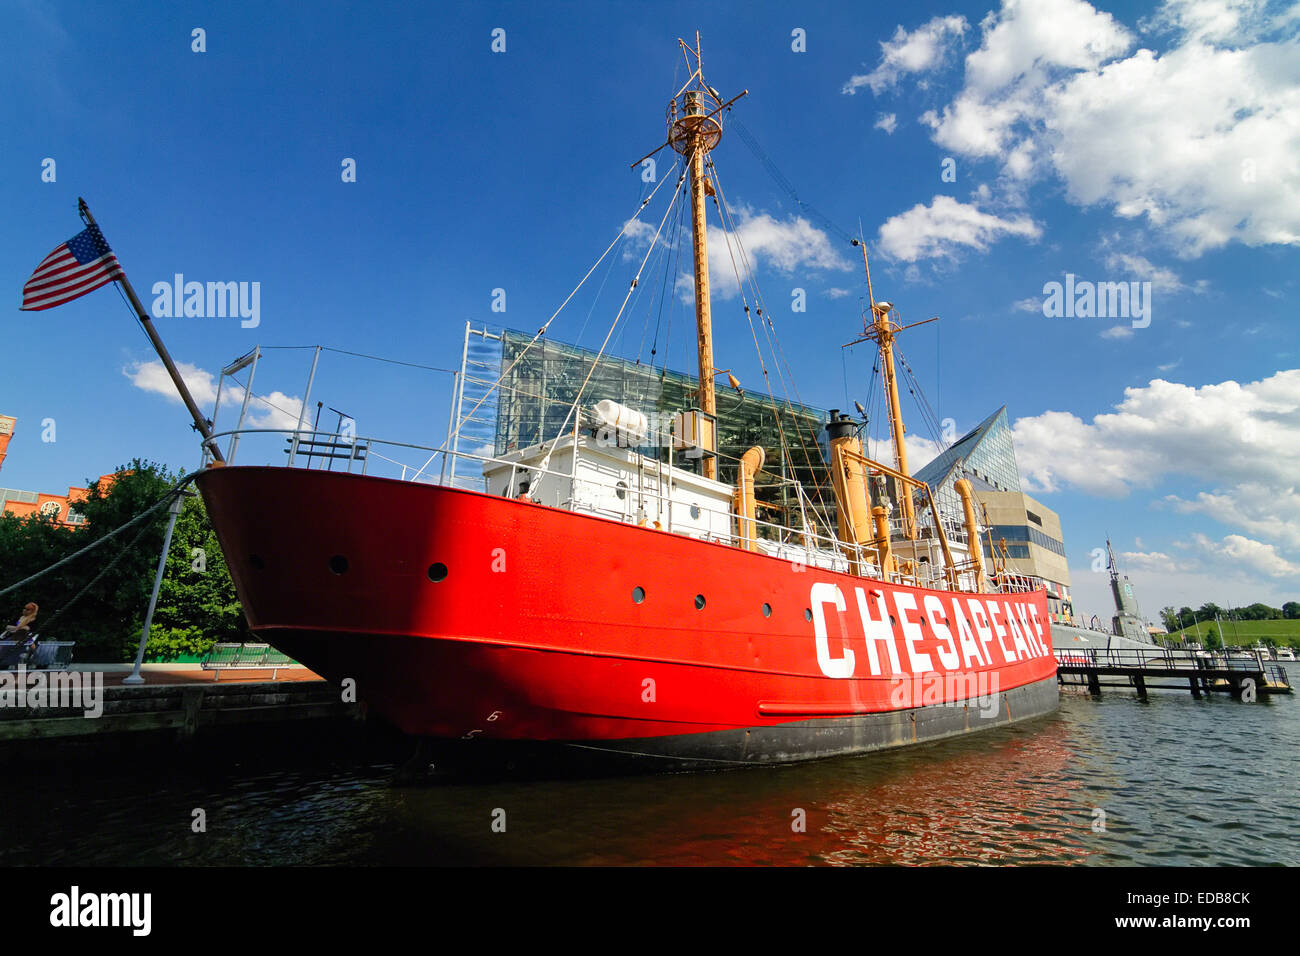 Basso Angolo di visione degli Stati Uniti Lightship Chesapeake, il Porto Interno di Baltimore, Maryland, Stati Uniti d'America Foto Stock